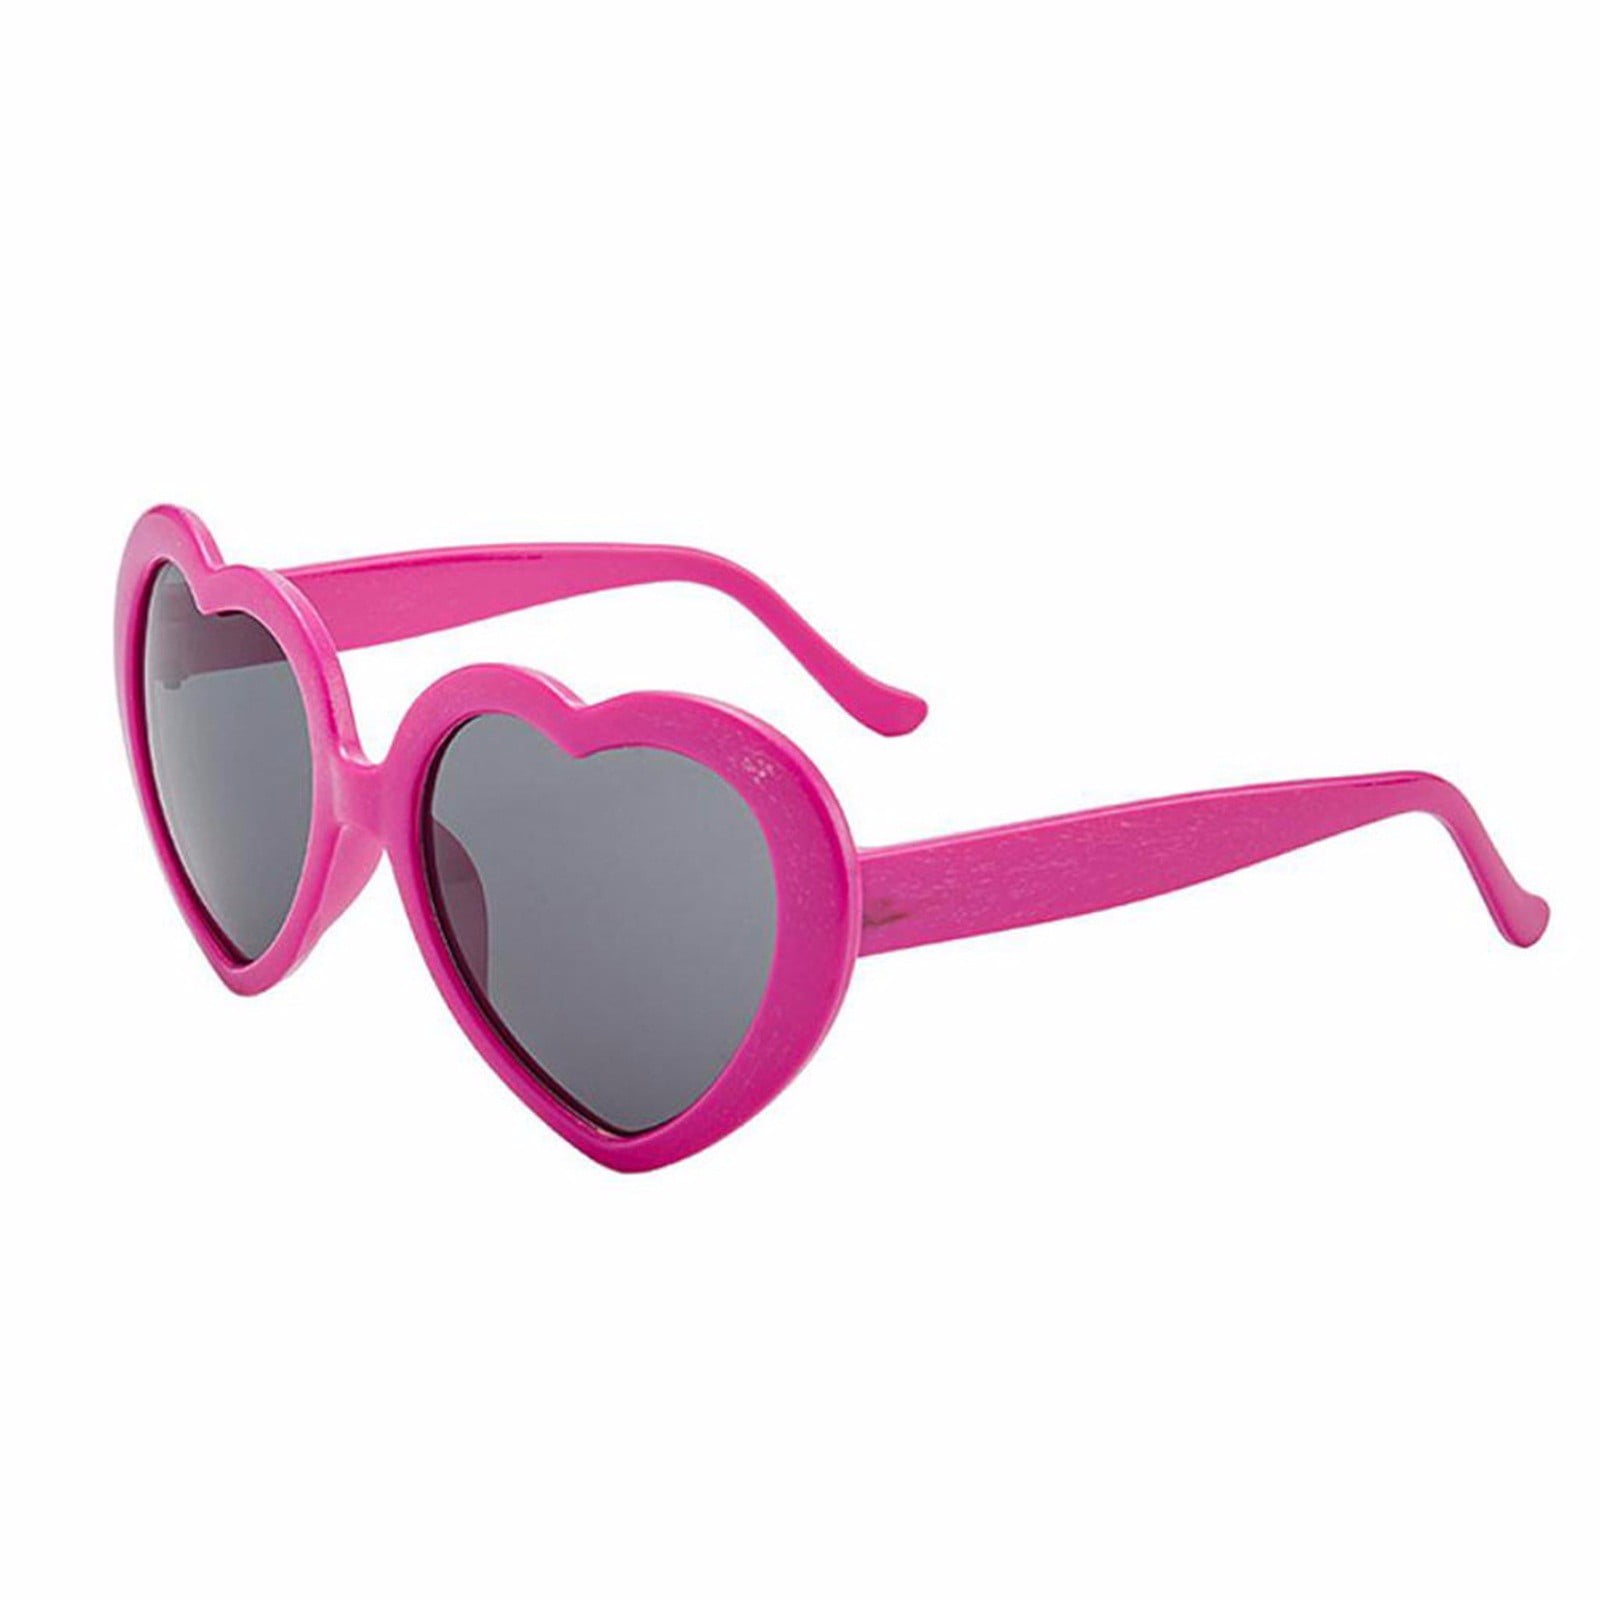 Eighties Fancy Dress Heart Shaped Rainbow Glasses Pink Heart Specs 1980-80's 